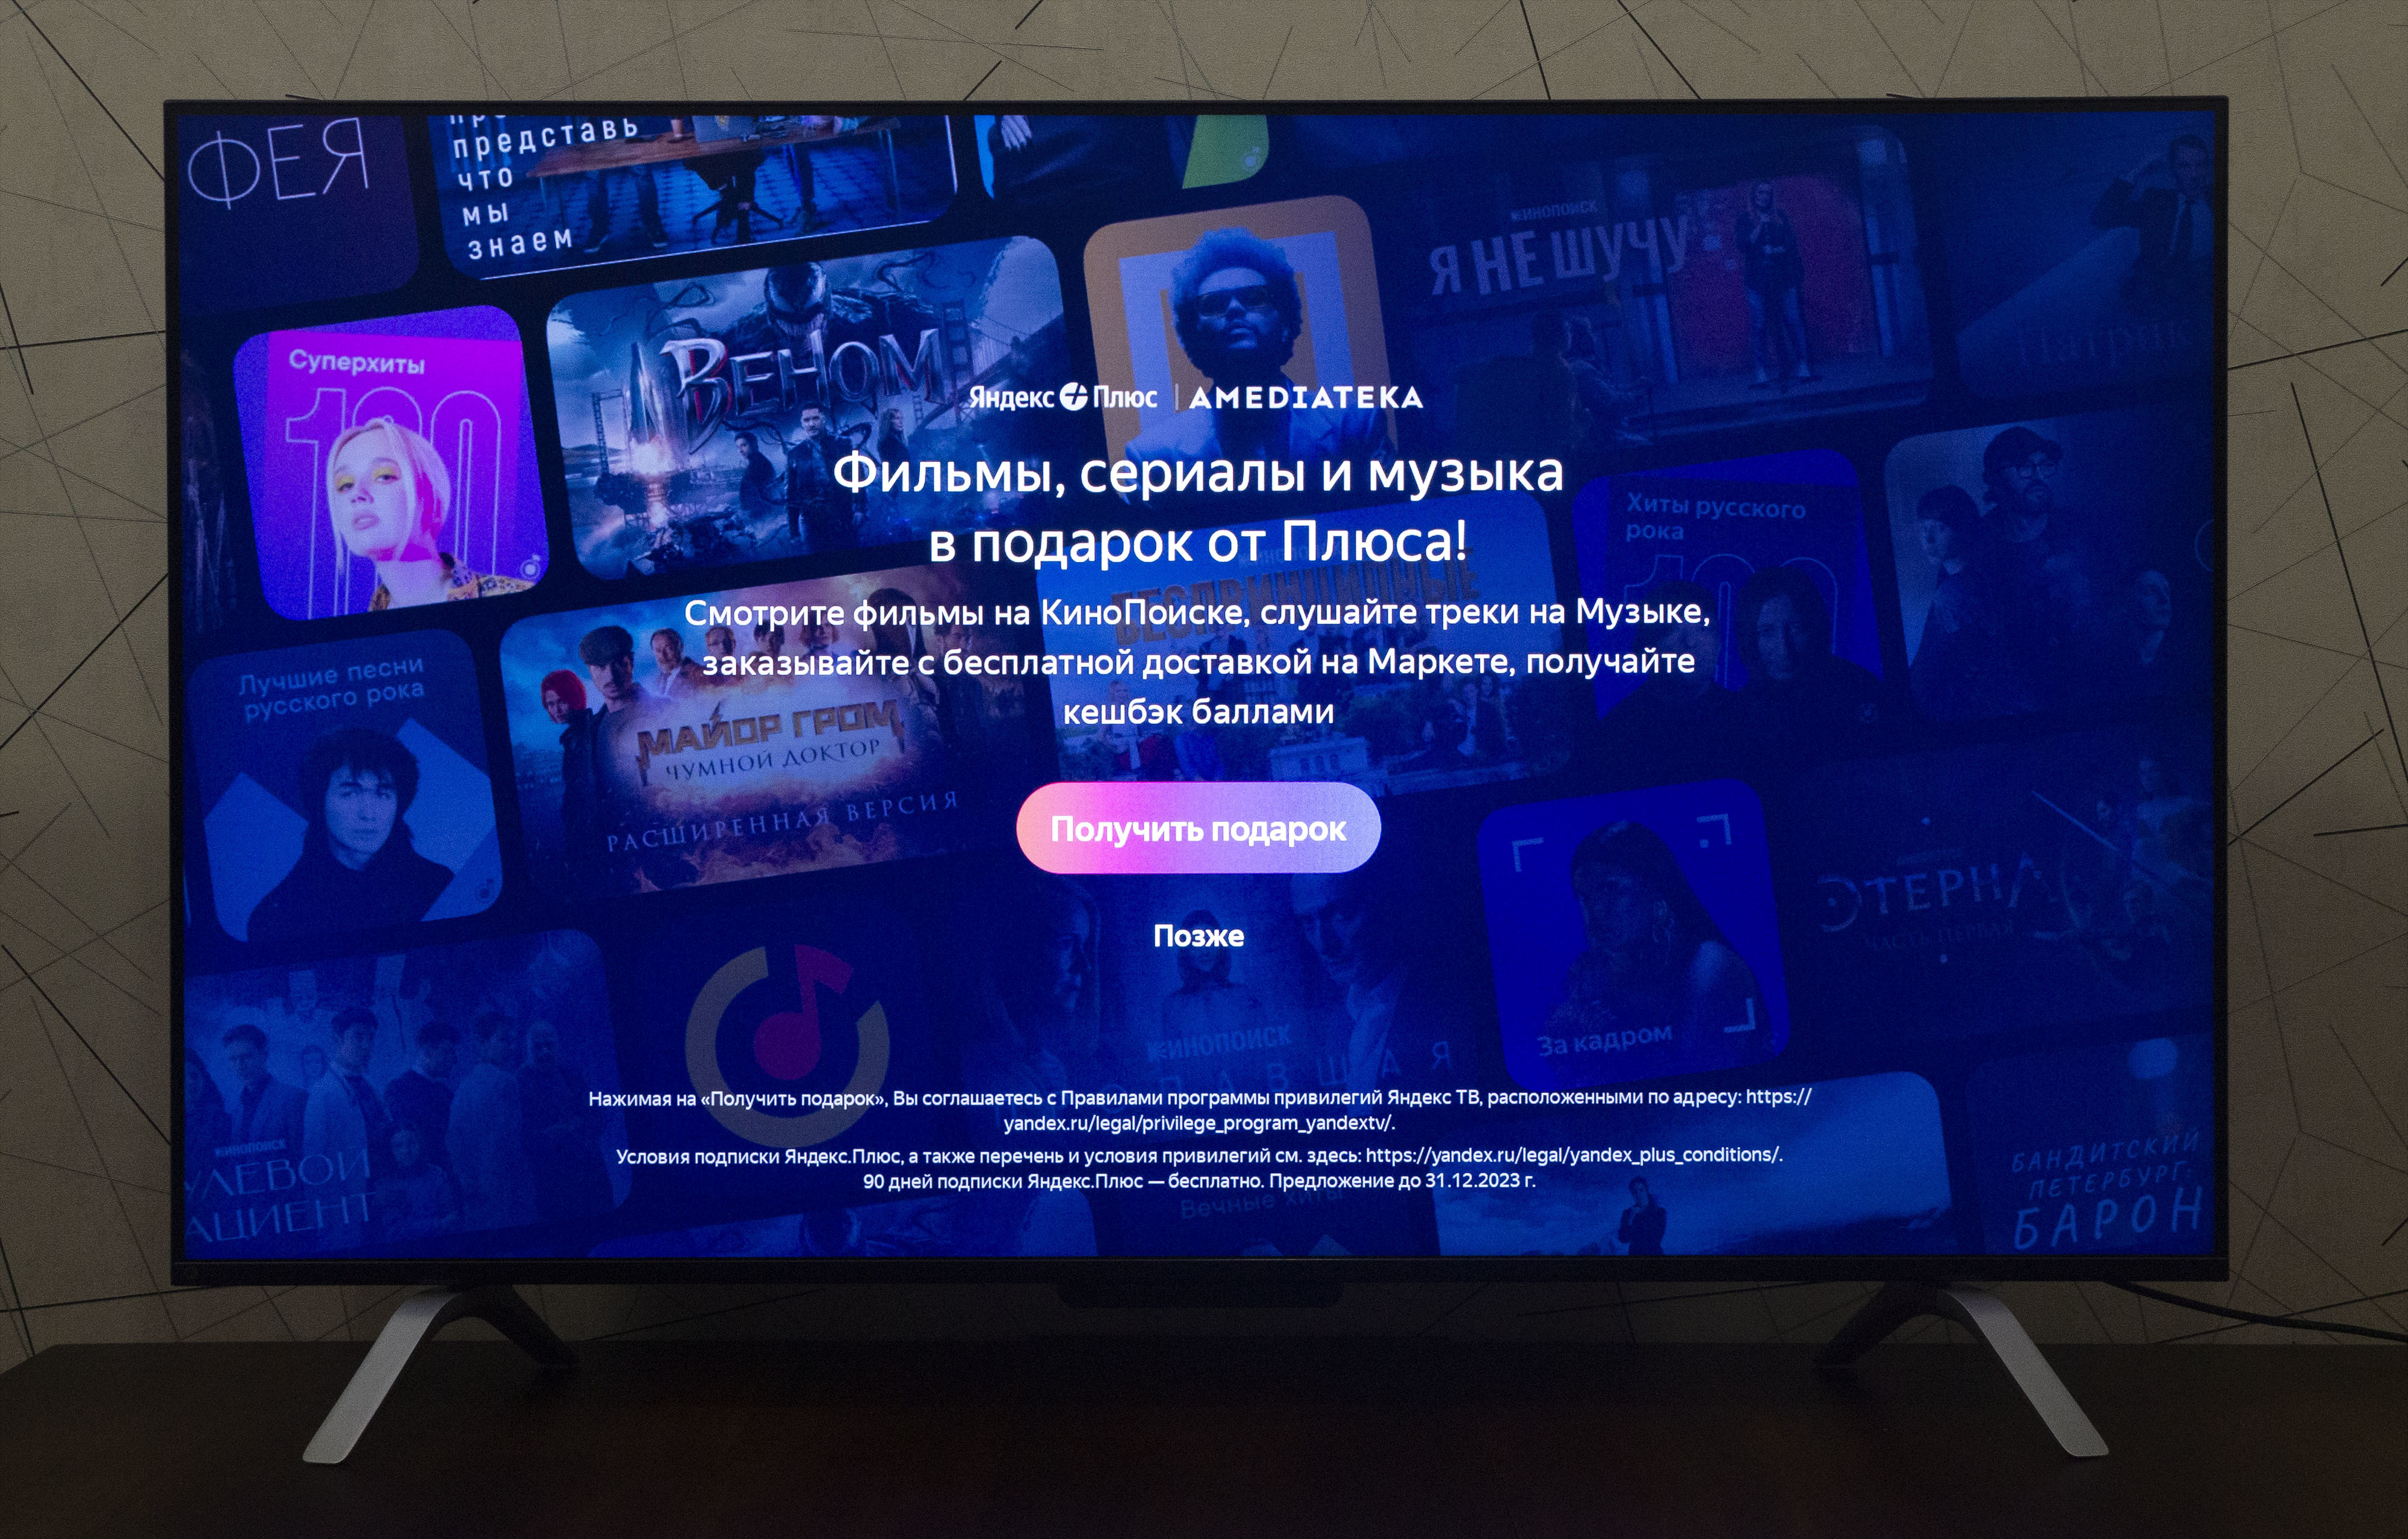 Алиса, включи PlayStation: Обзор телевизора Яндекс ТВ Станция Про |  GameMAG